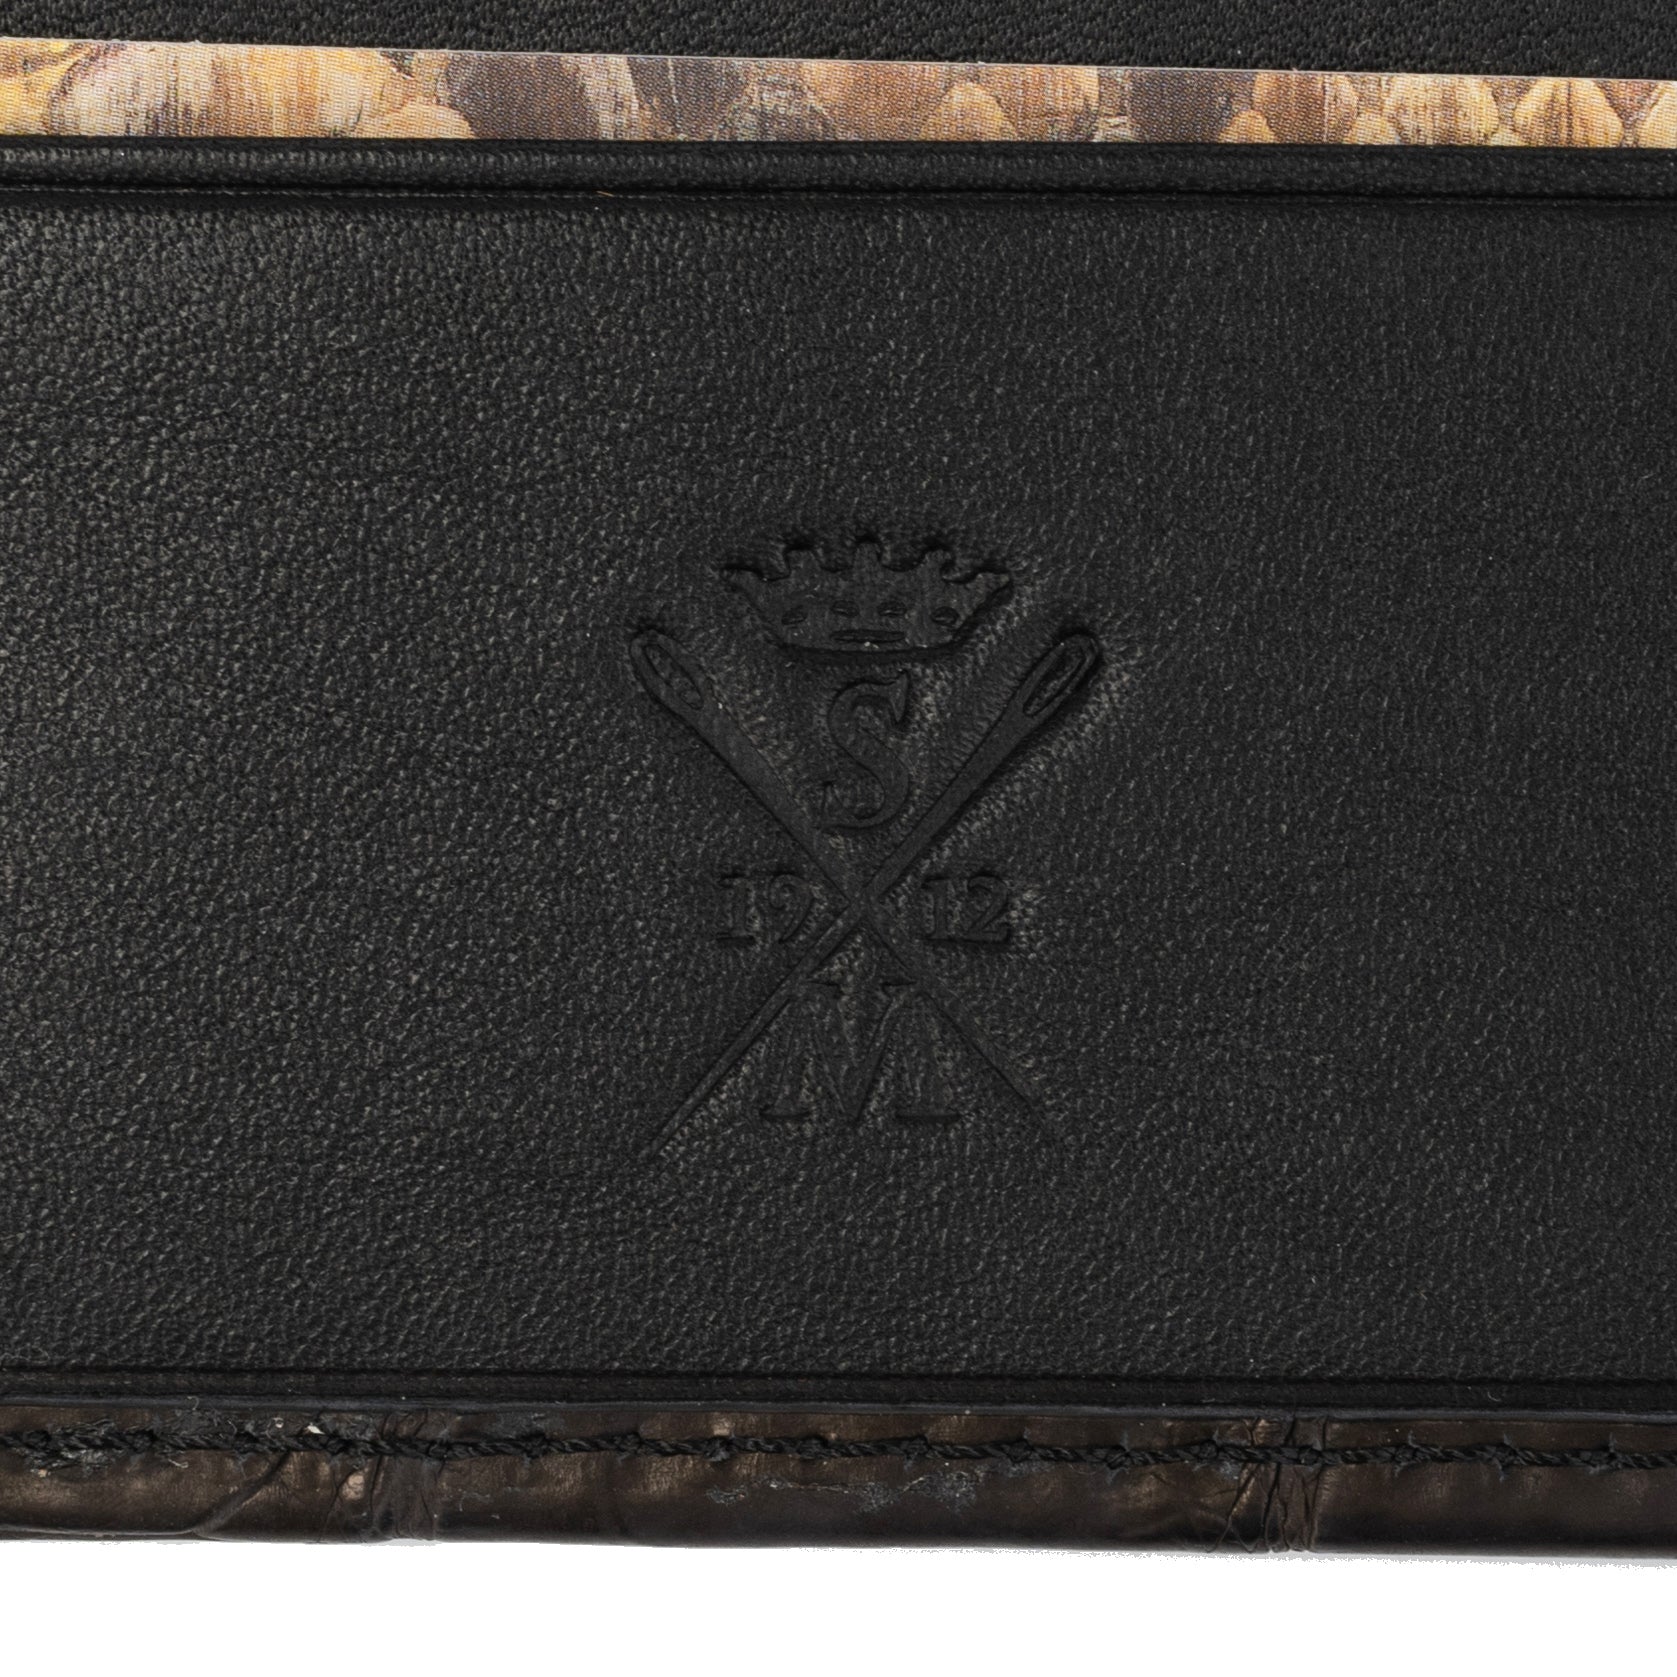 Kiton Wallet - Burgundy Leather Men Wallet/ Credit Card Holder Sale